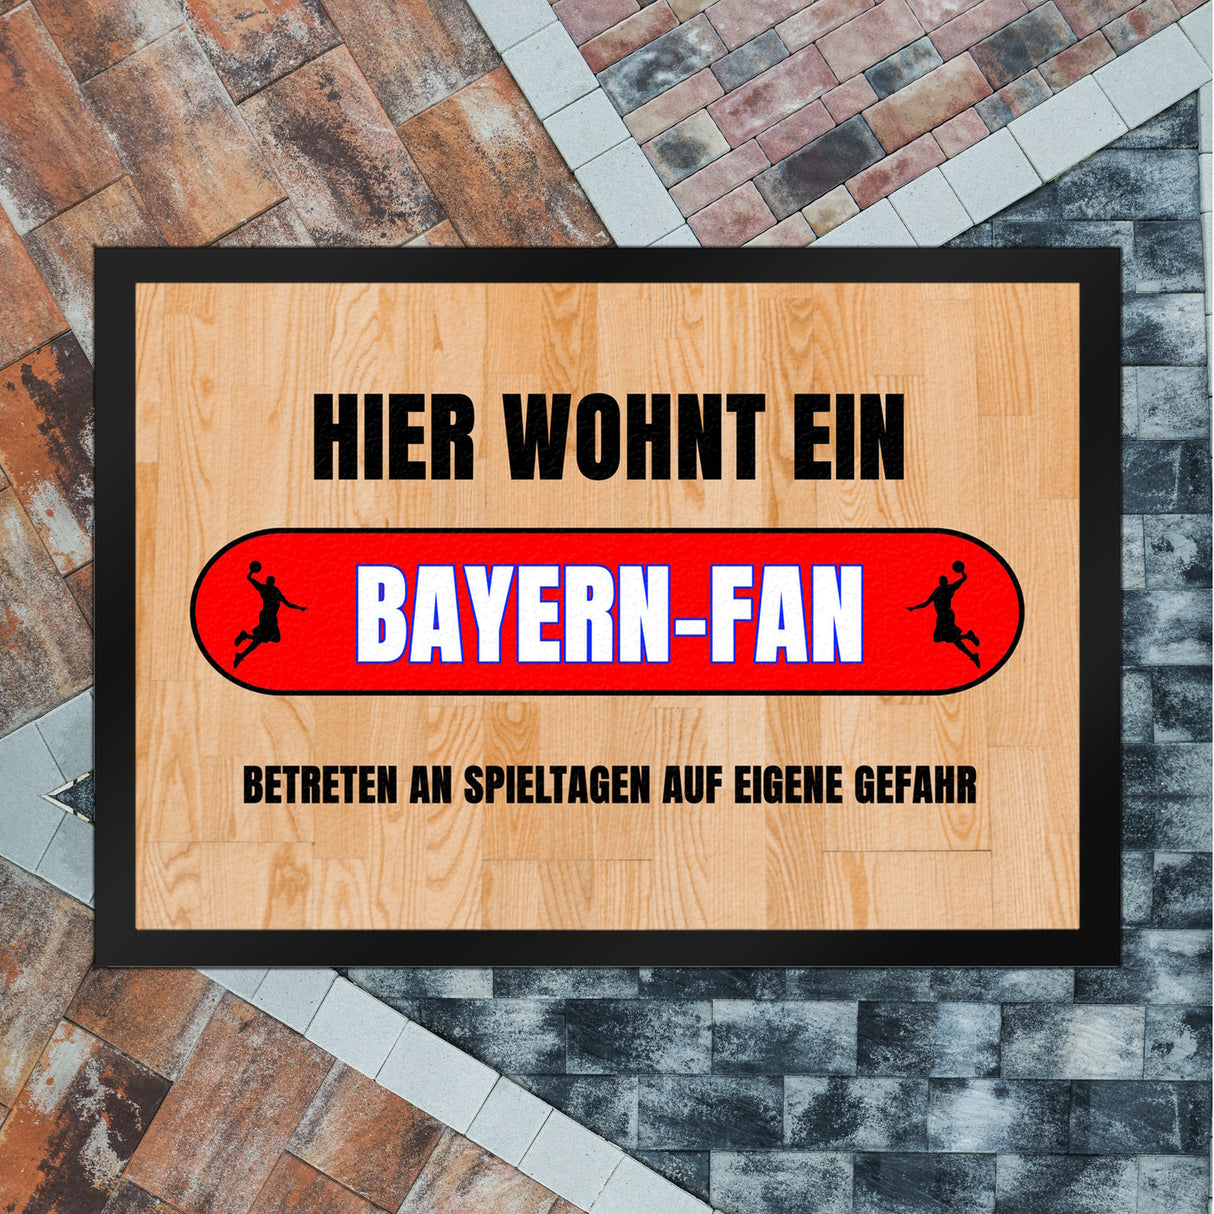 Hier wohnt ein Bayern-Fan Fußmatte in 35x50 cm mit Turnhallenboden Motiv